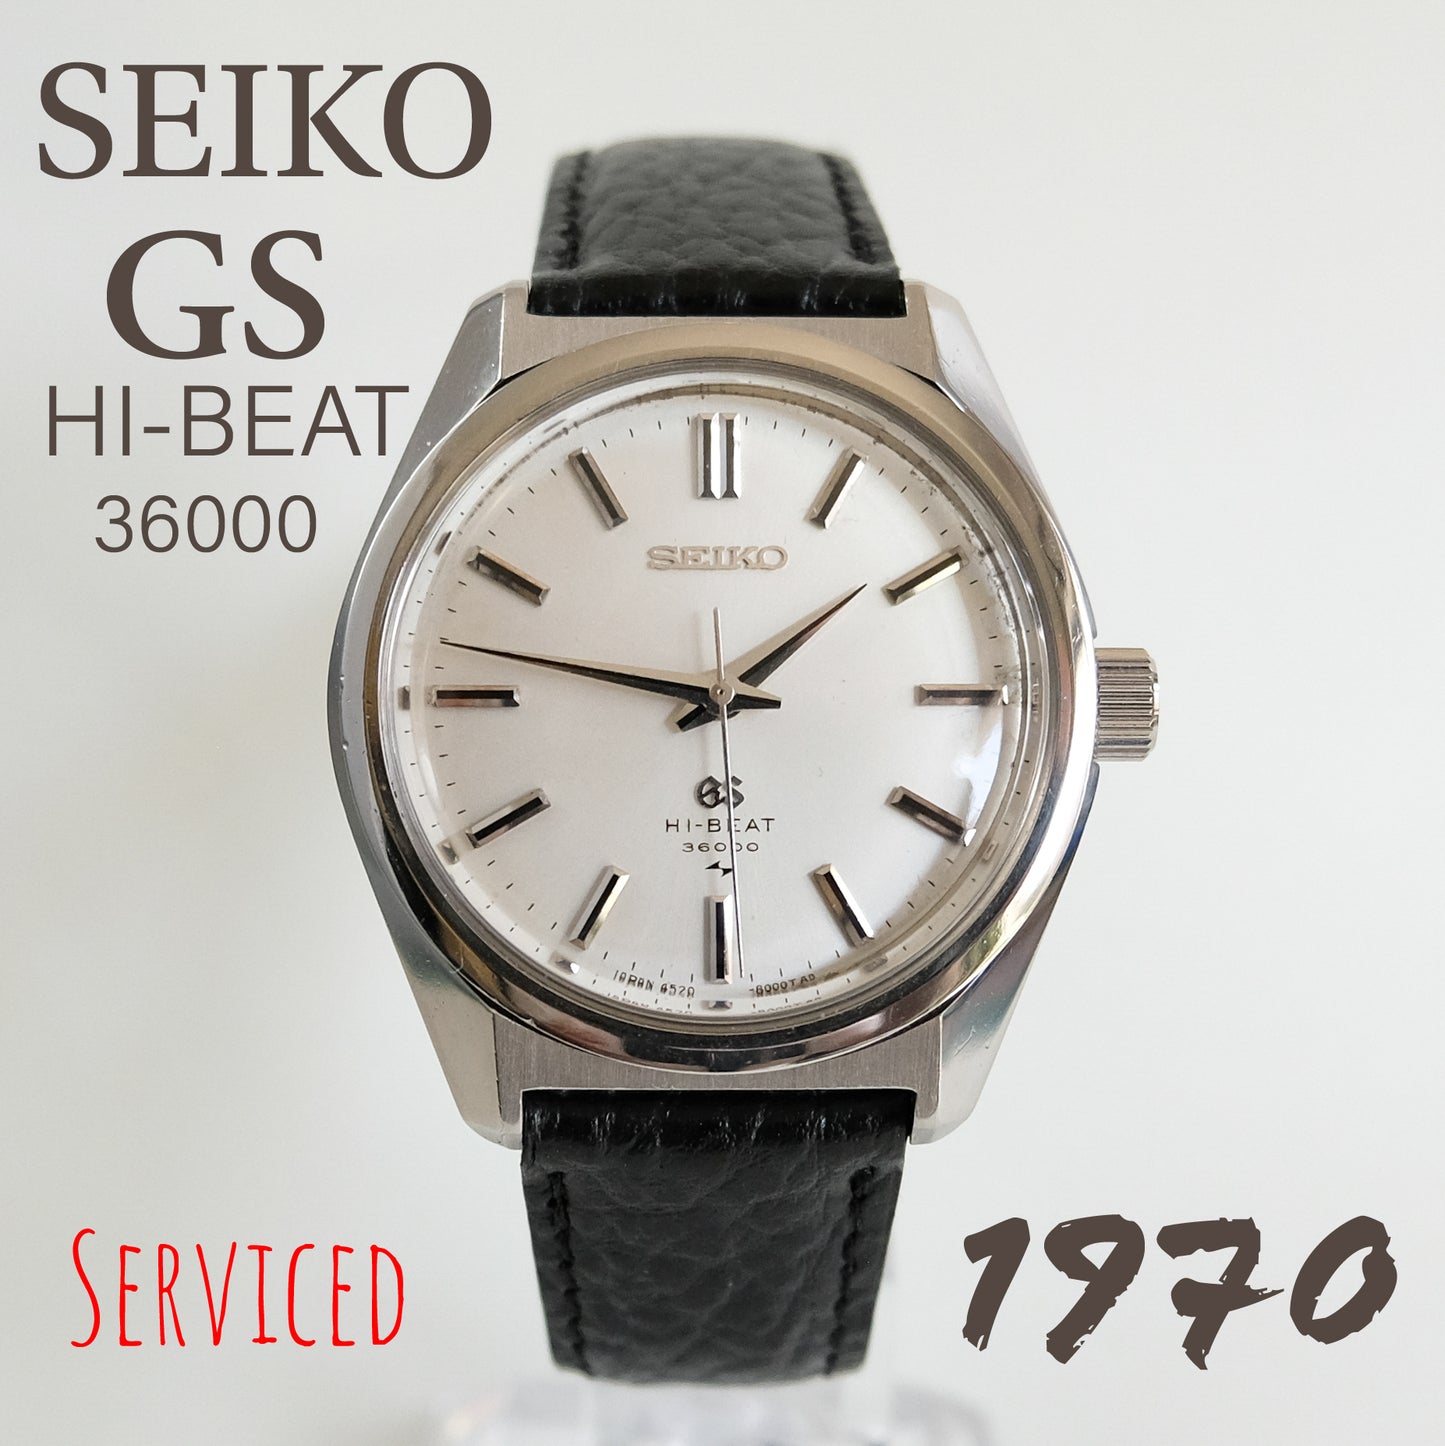 1970 Grand Seiko 45GS Hi-Beat 36000 4520-8000